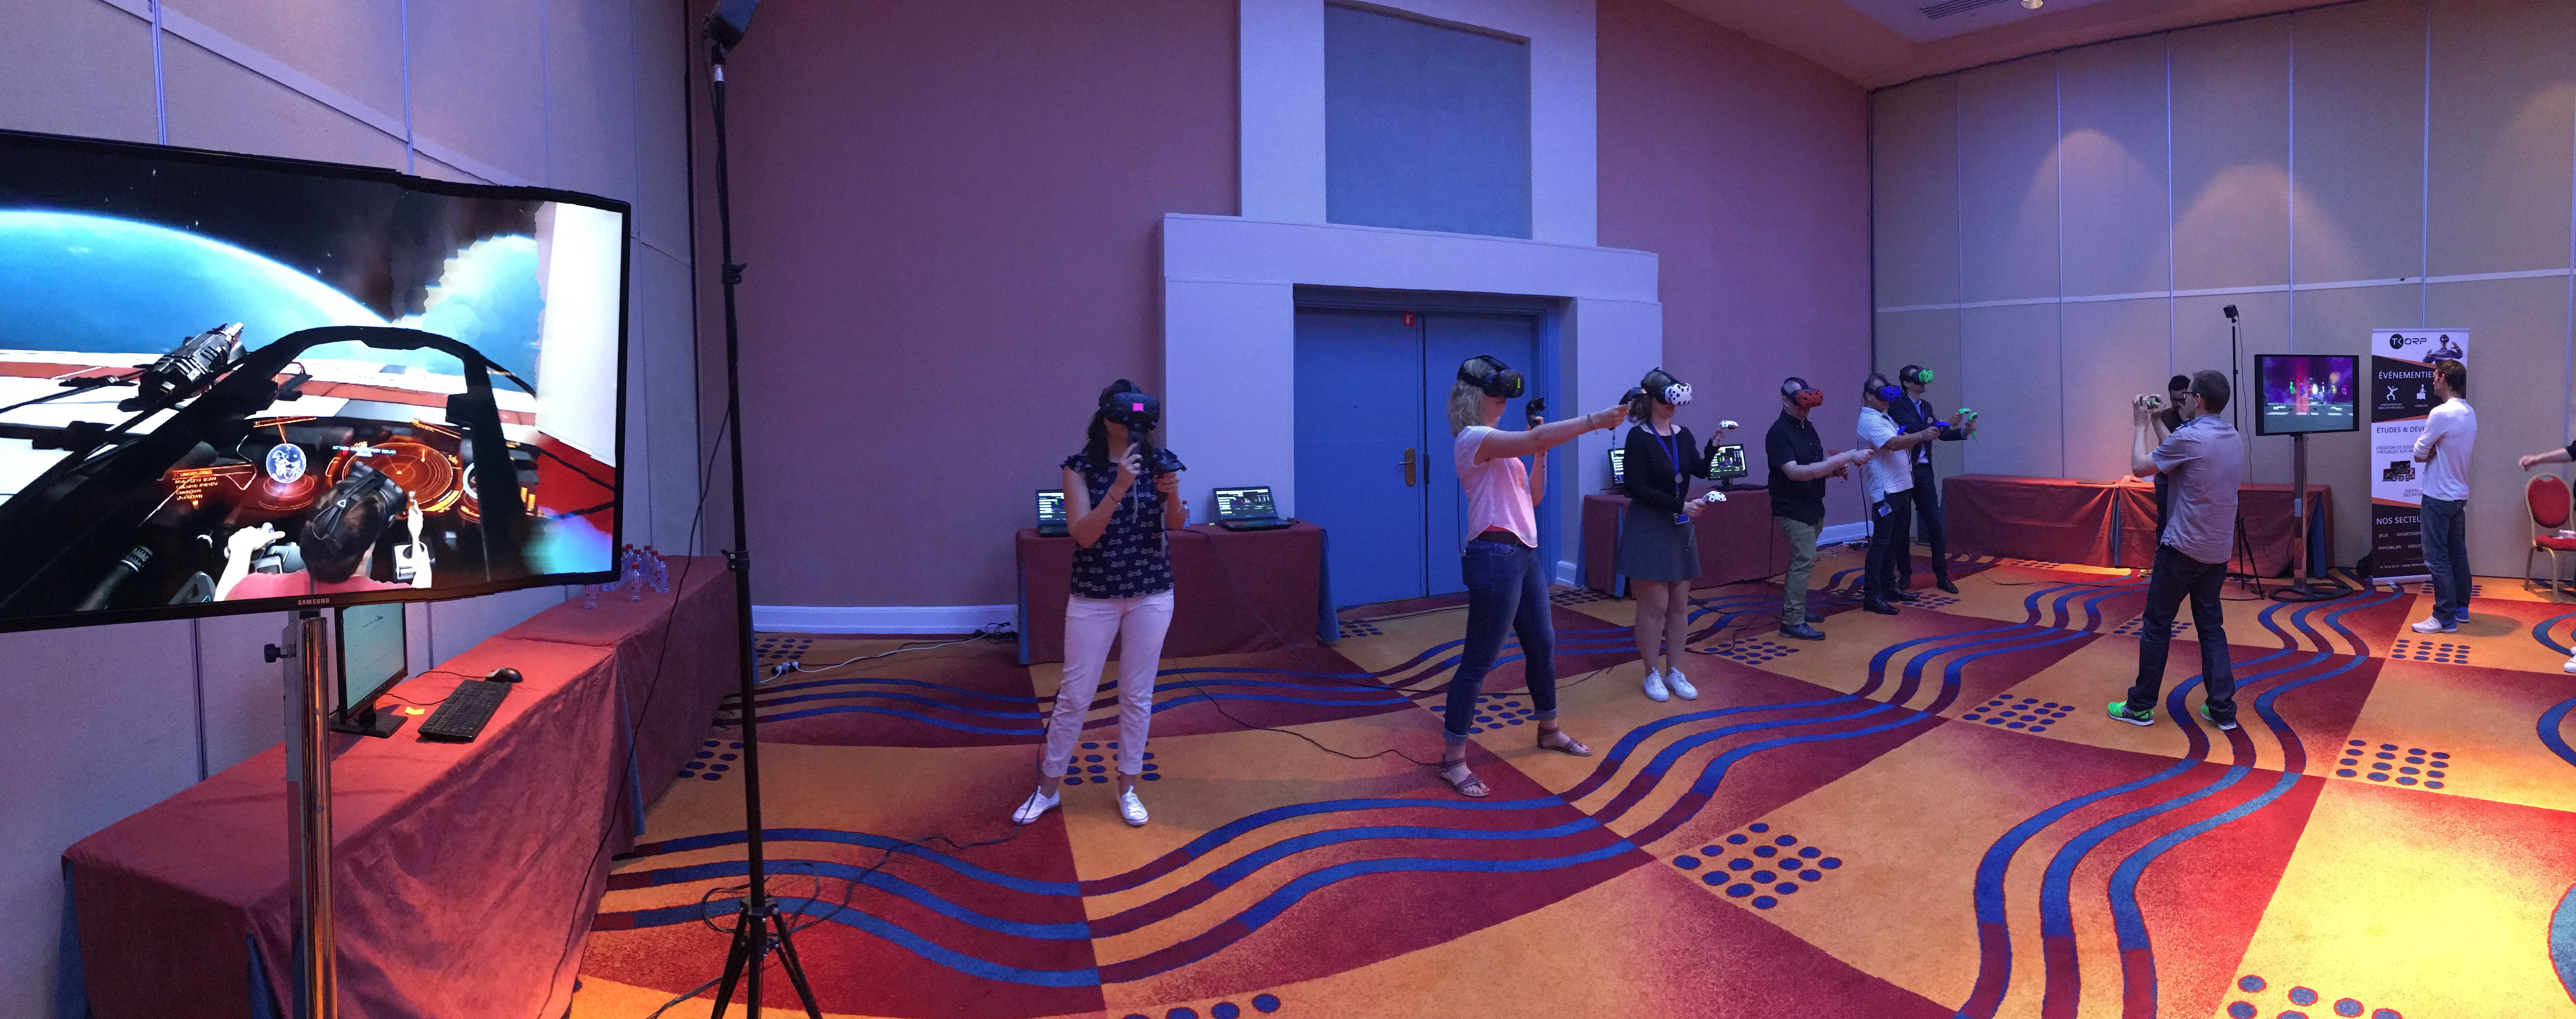 Animation réalité virtuelle - Animation réalité virtuelle Disney